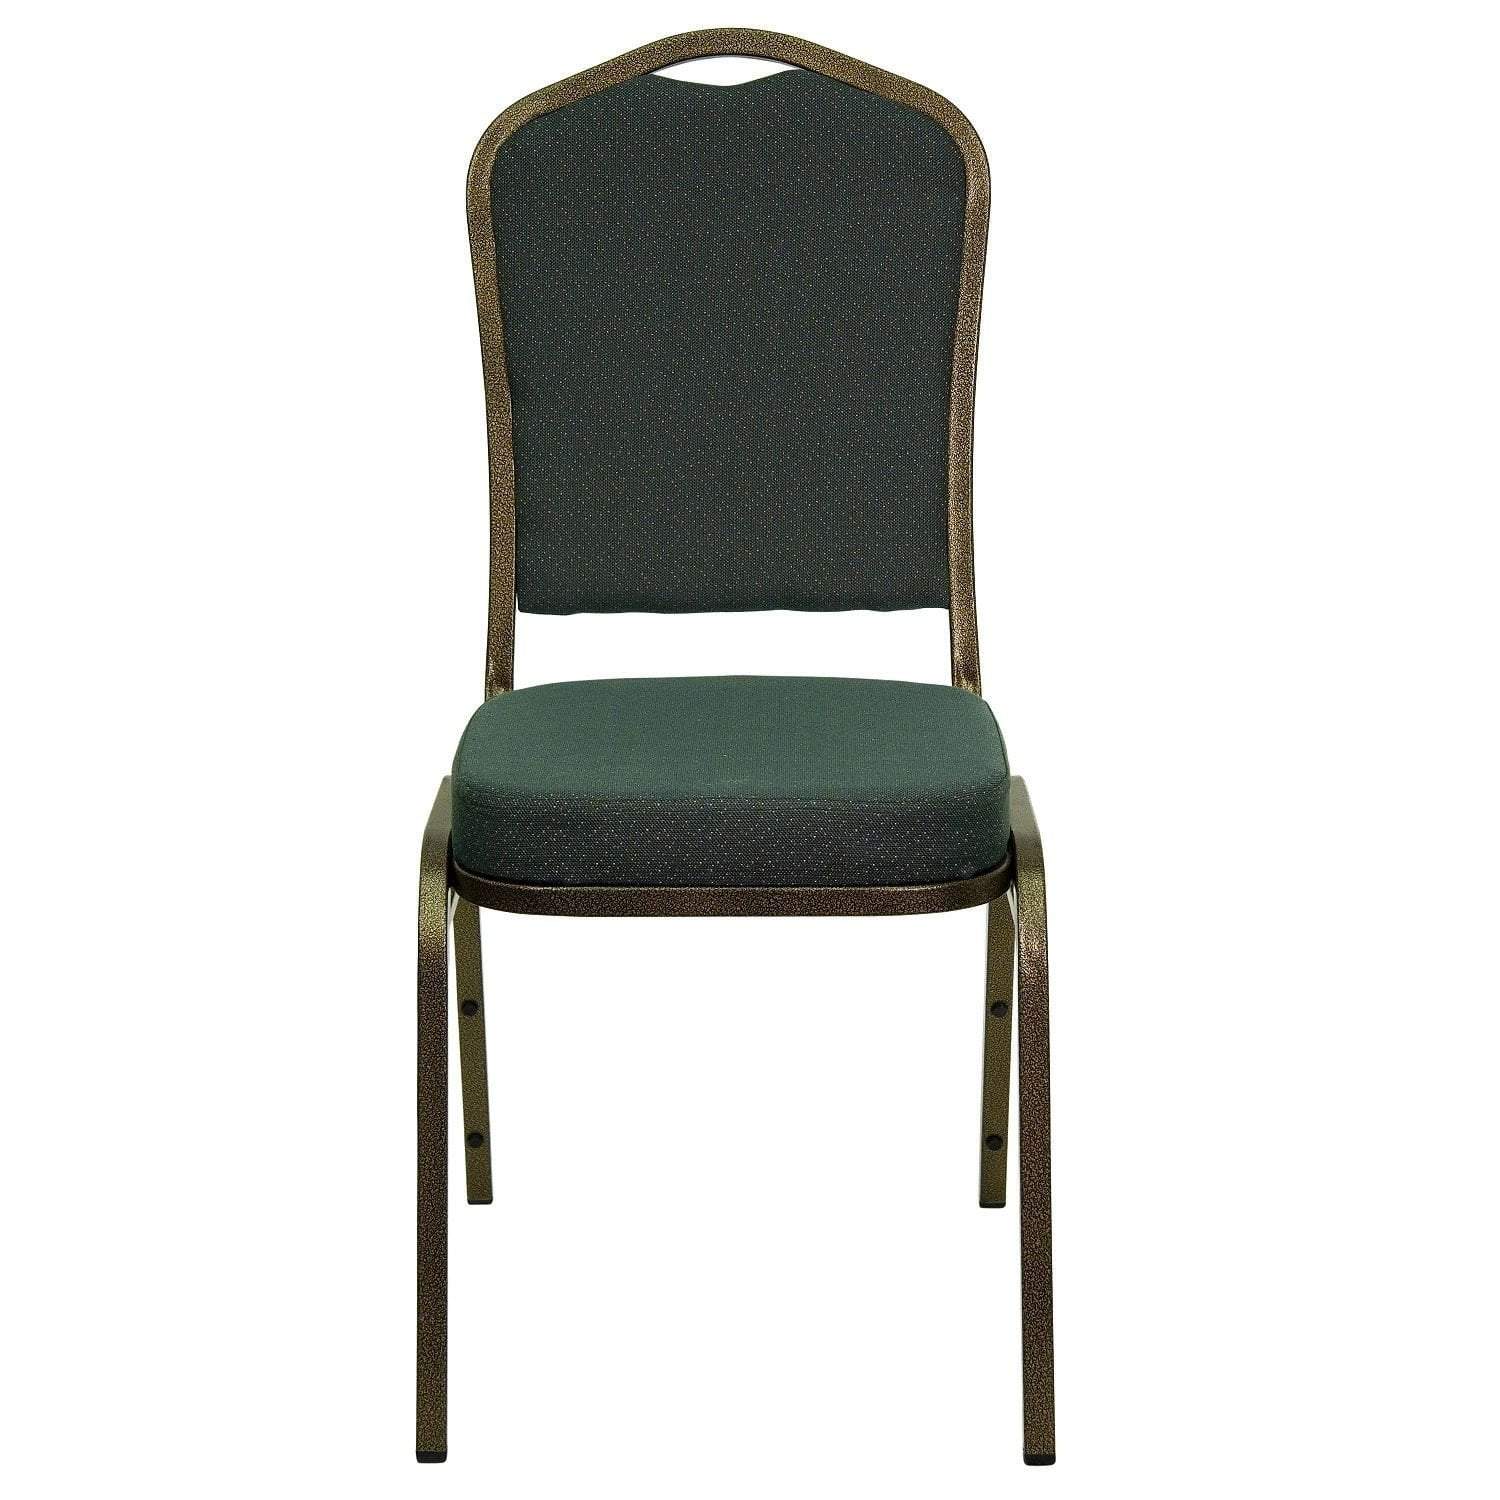 High Quality Aluminium Chair - Green